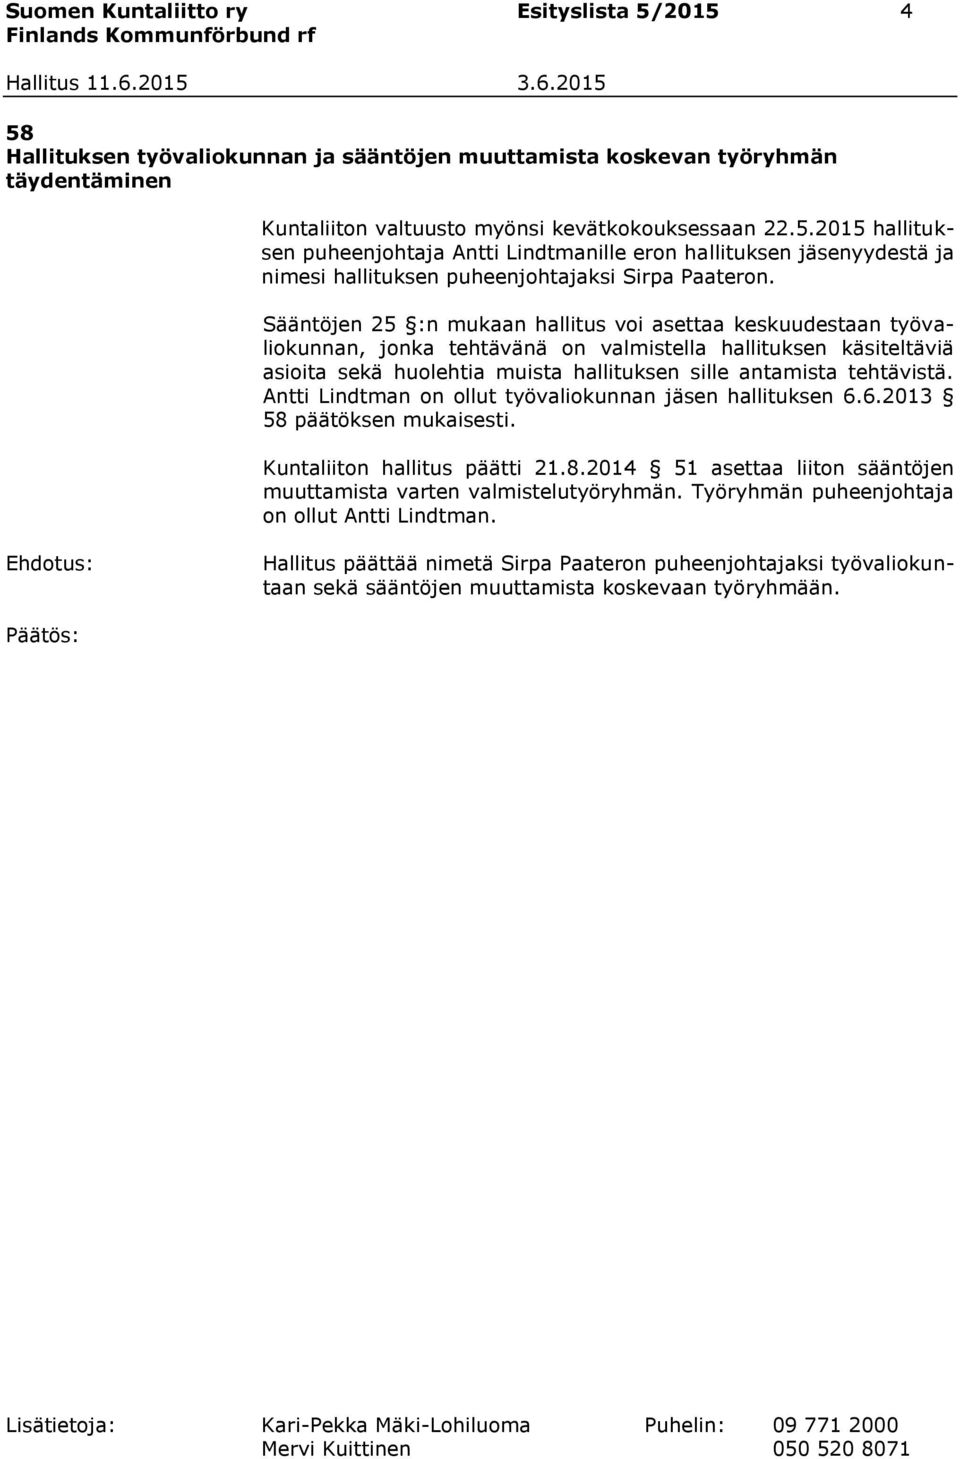 Antti Lindtman on ollut työvaliokunnan jäsen hallituksen 6.6.2013 58 päätöksen mukaisesti. Kuntaliiton hallitus päätti 21.8.2014 51 asettaa liiton sääntöjen muuttamista varten valmistelutyöryhmän.